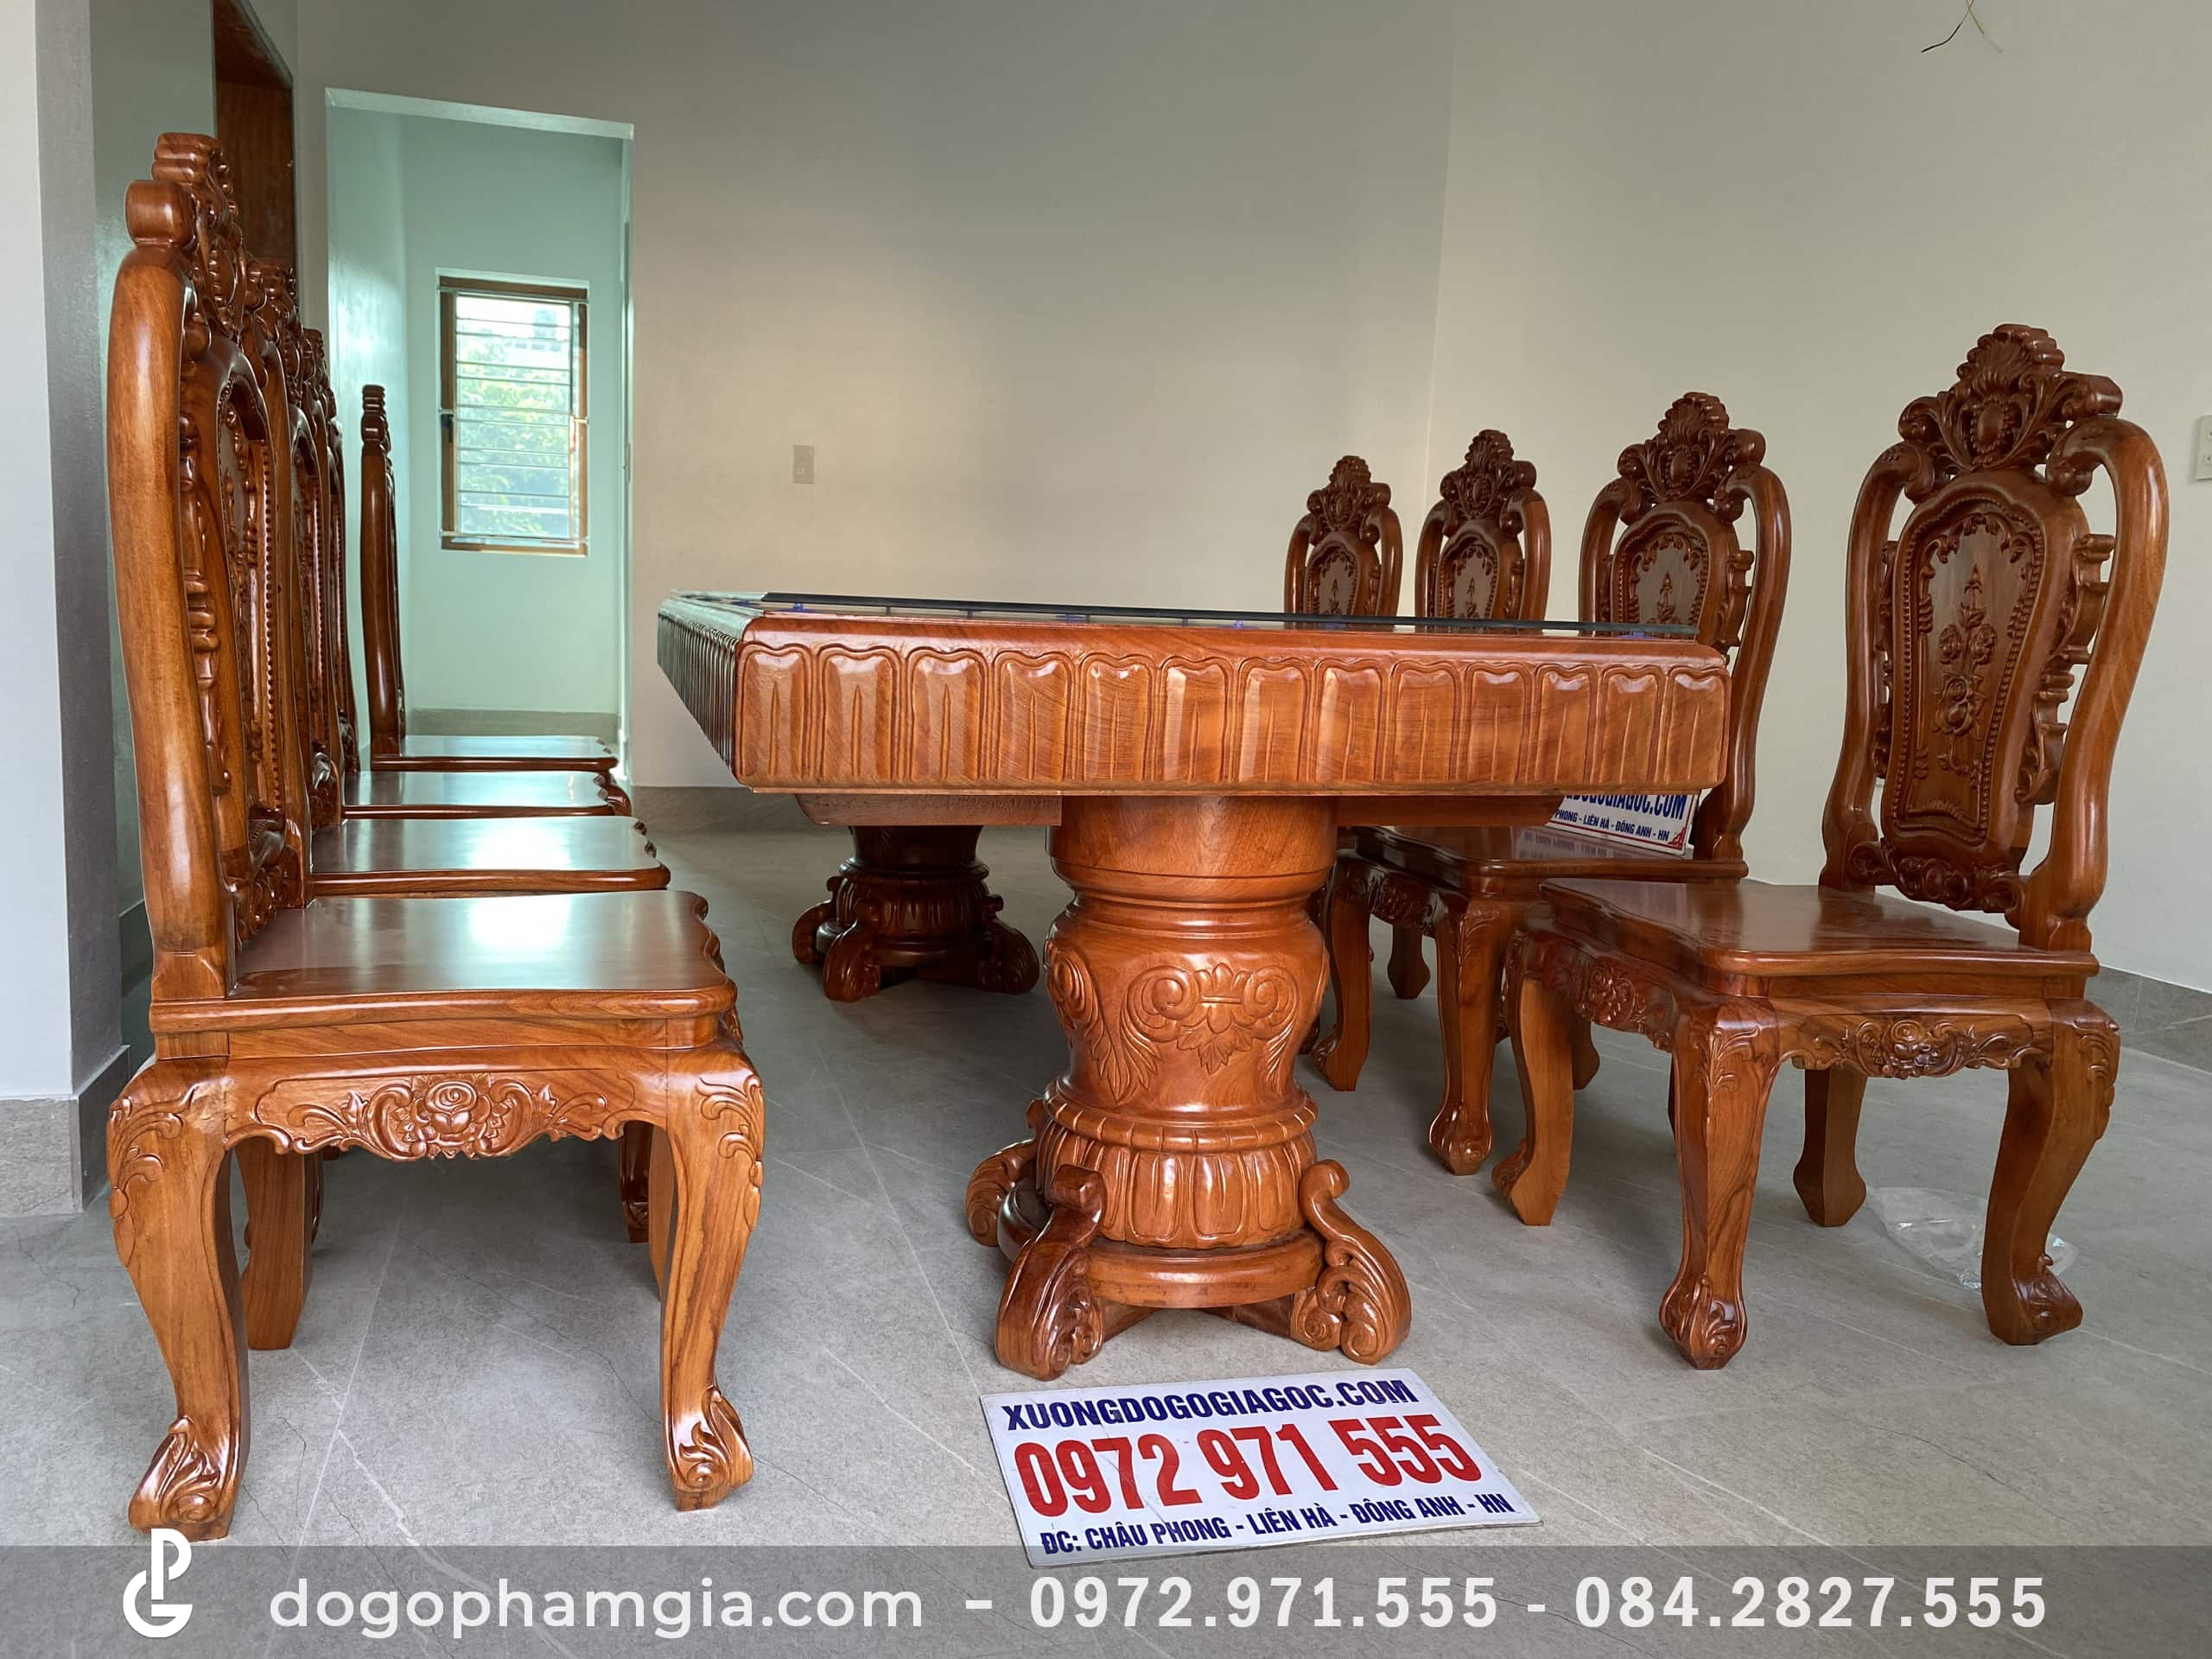 Bàn ăn nguyên khối gỗ Gõ bộ 8 ghế hồng hạc đục 2 mặt siêu đẹp không chỉ là một sản phẩm nội thất mà còn là một tác phẩm nghệ thuật. Với độ chính xác và kỹ thuật đục đẹp mắt, sản phẩm này là một sự lựa chọn cho những người yêu thích nghệ thuật và độc đáo.